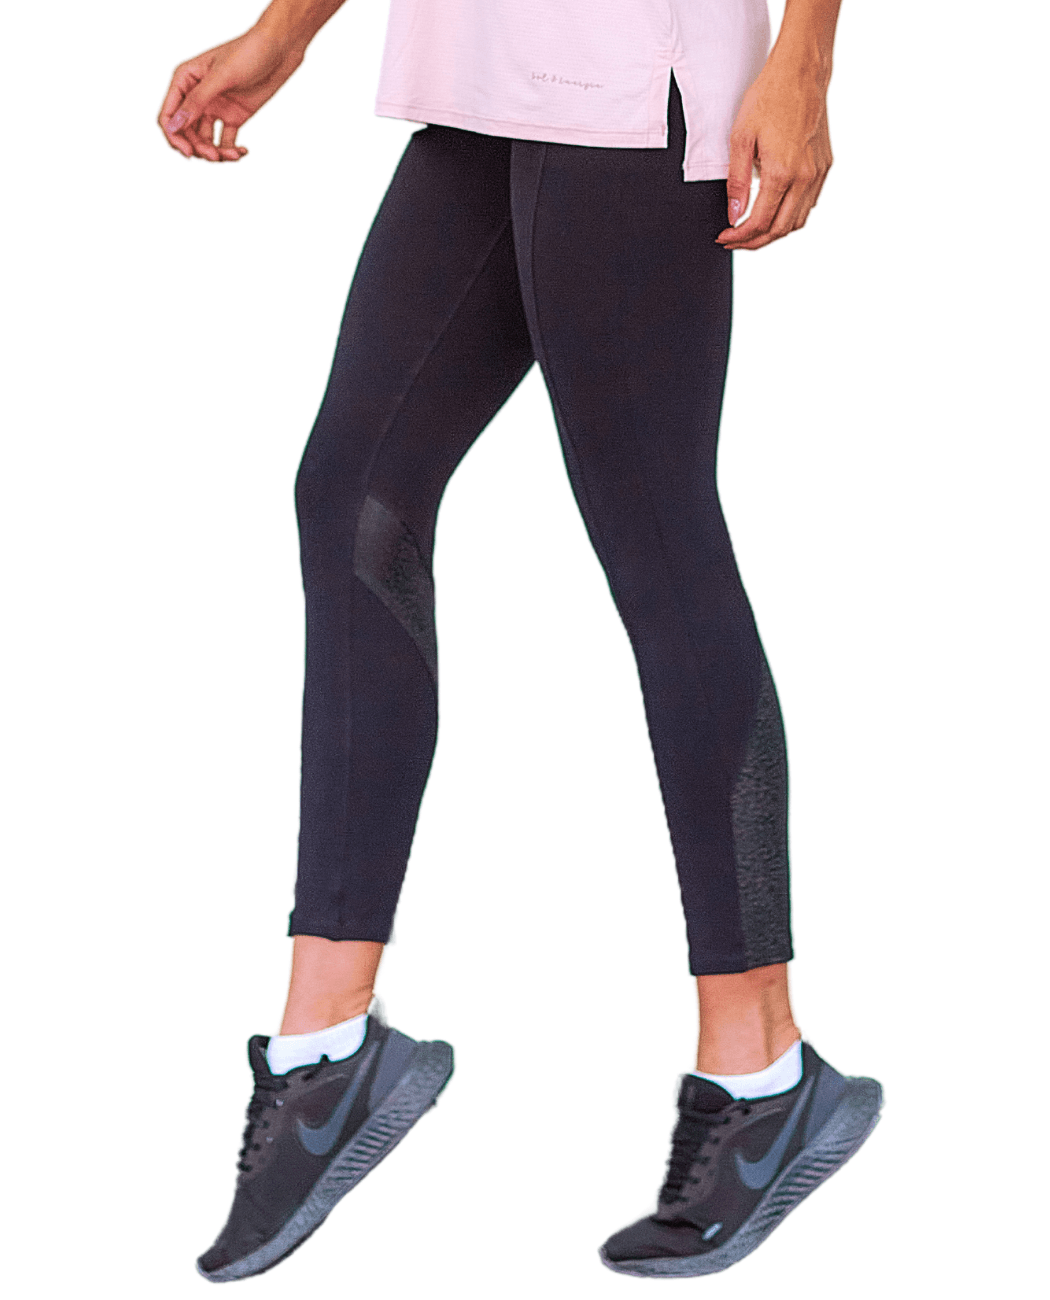 Legging fitness feminina preto com cós alto e detalhe em v seamless